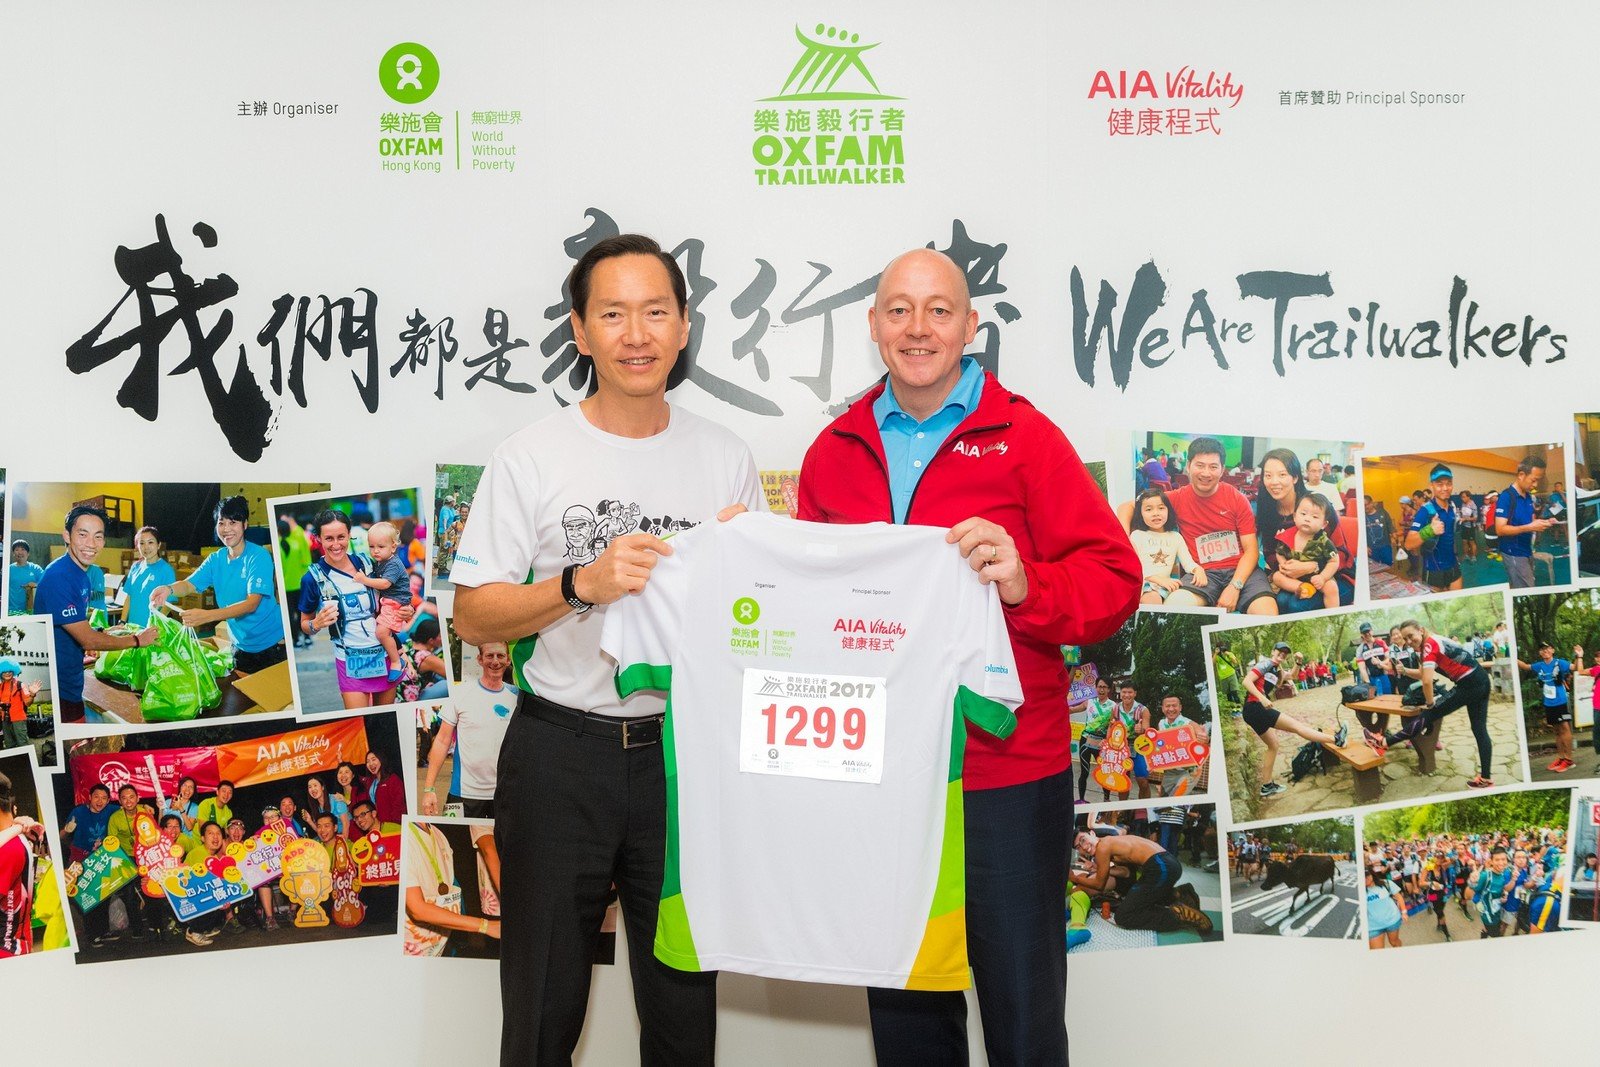 友邦香港及澳门首席执行官顾培德在今天的记者会宣布，『AIA Vitality 健康程式』在未来三年继绩成为『乐施毅行者』的首席赞助机构。